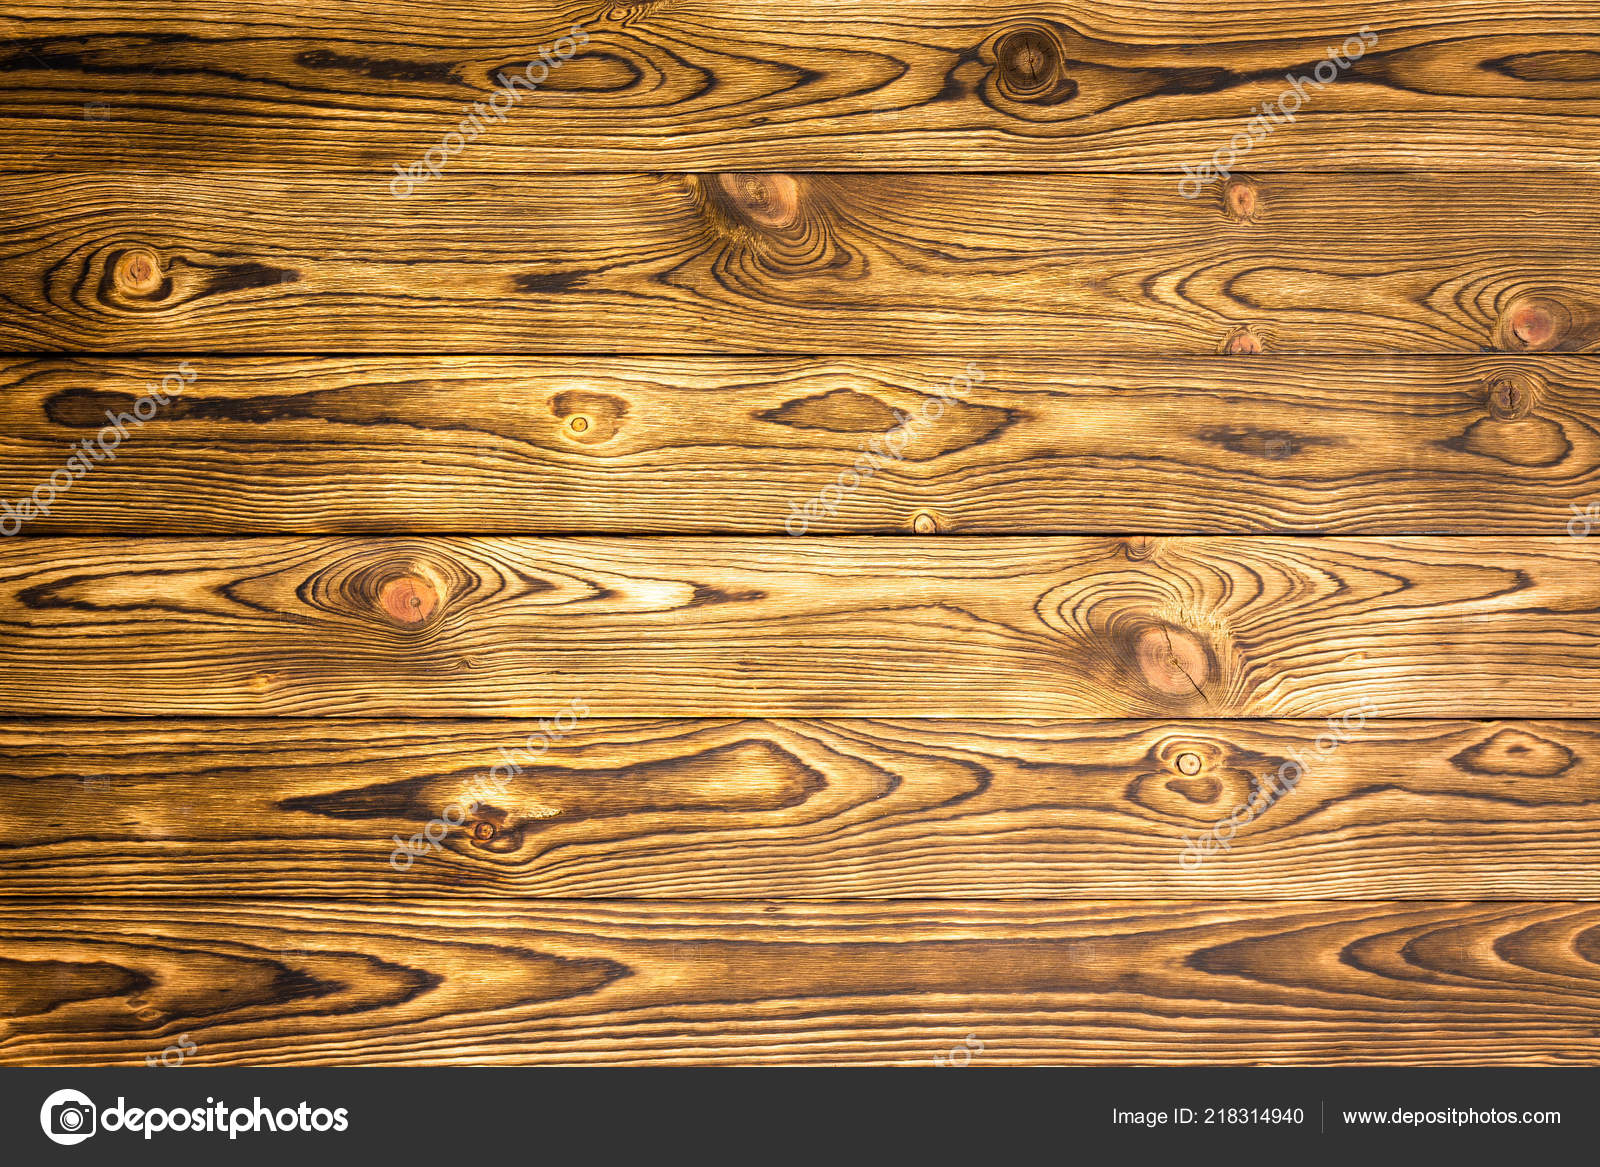 Với thôn gỗ song song tạo nên cảm giác chưa từng có cho một tấm ván. Kiểu vân song song được tạo ra từ cách cắt gỗ giúp cho không gian nhà bạn trông rất hiện đại nhưng không kém phần cổ điển.